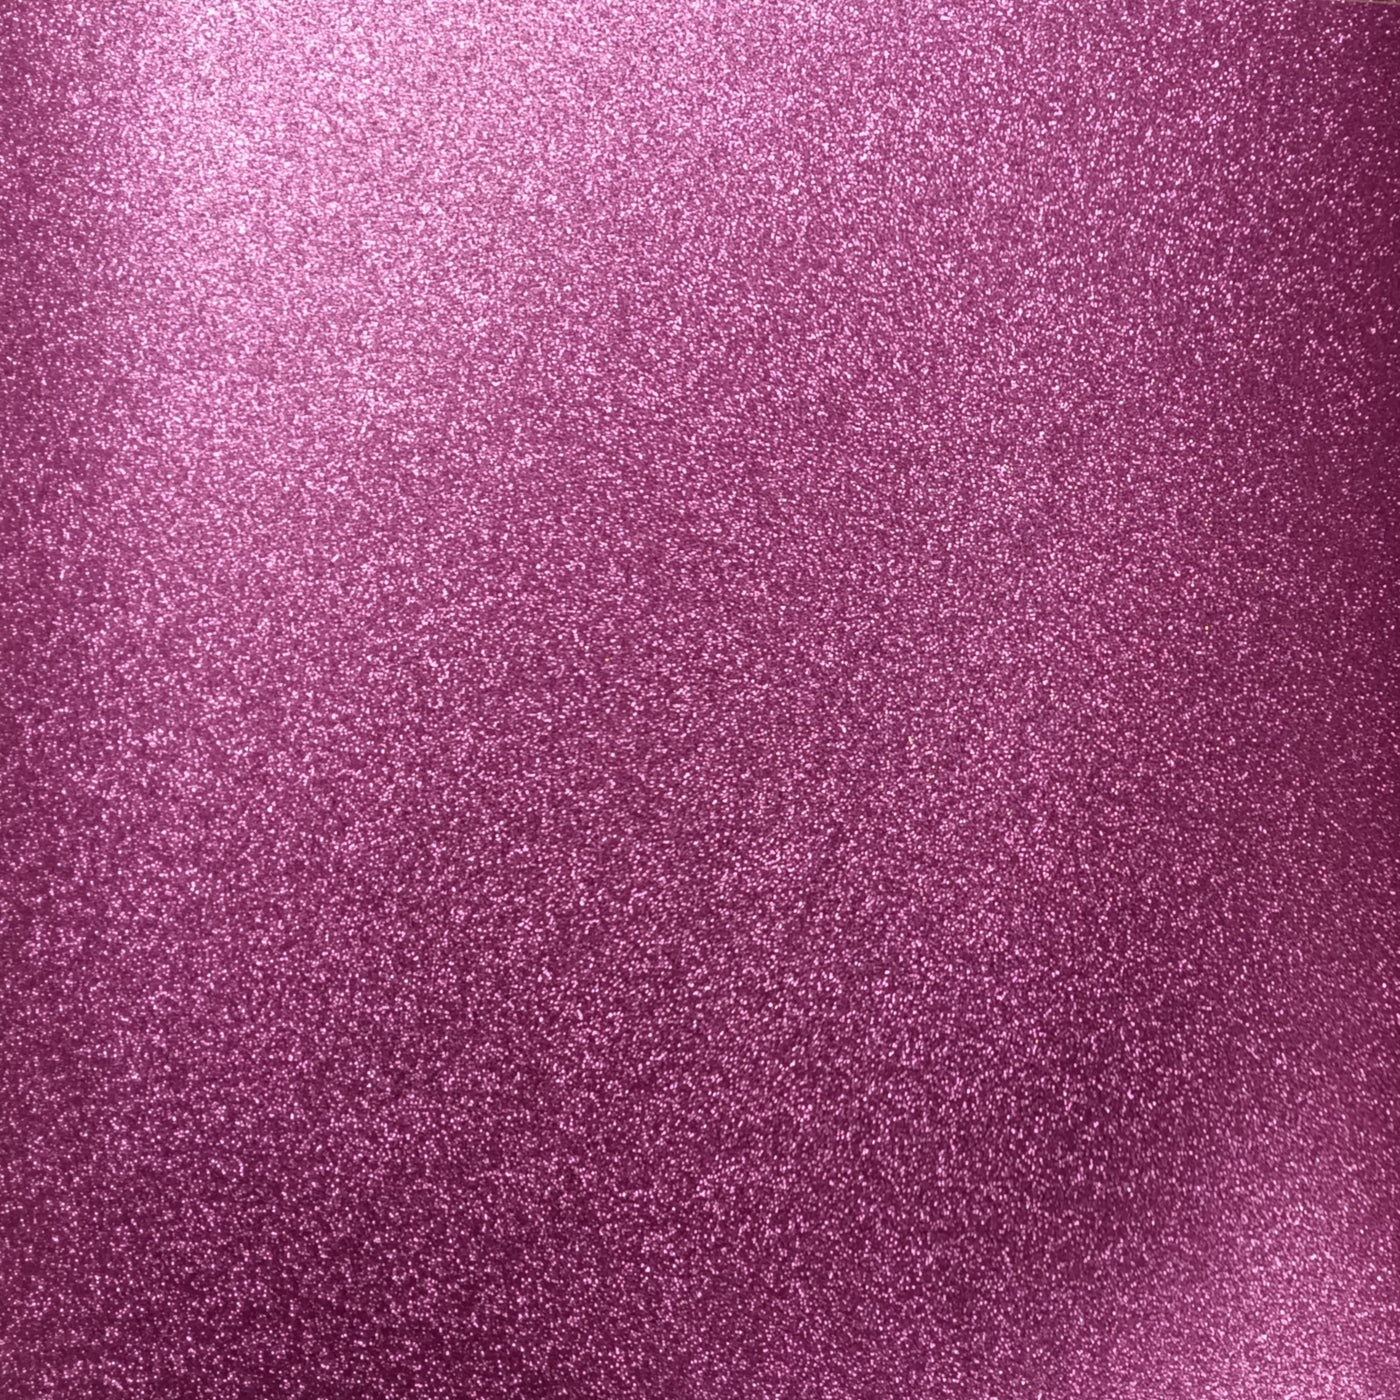 Violet Shimmer Cardstock - Various Sizes